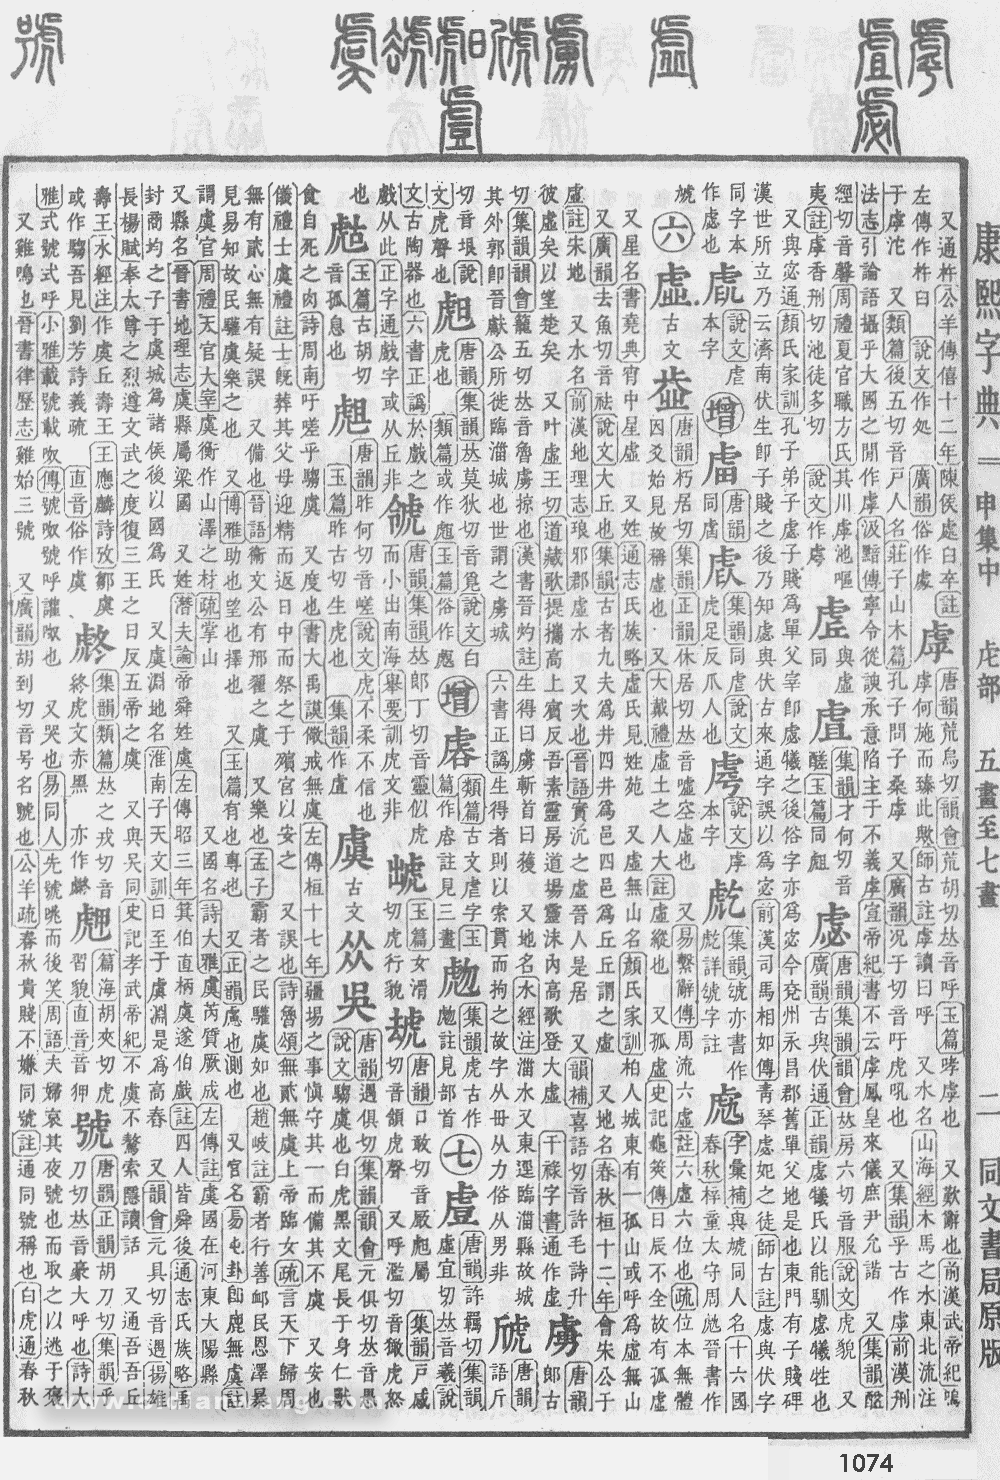 康熙字典掃描版第1074頁